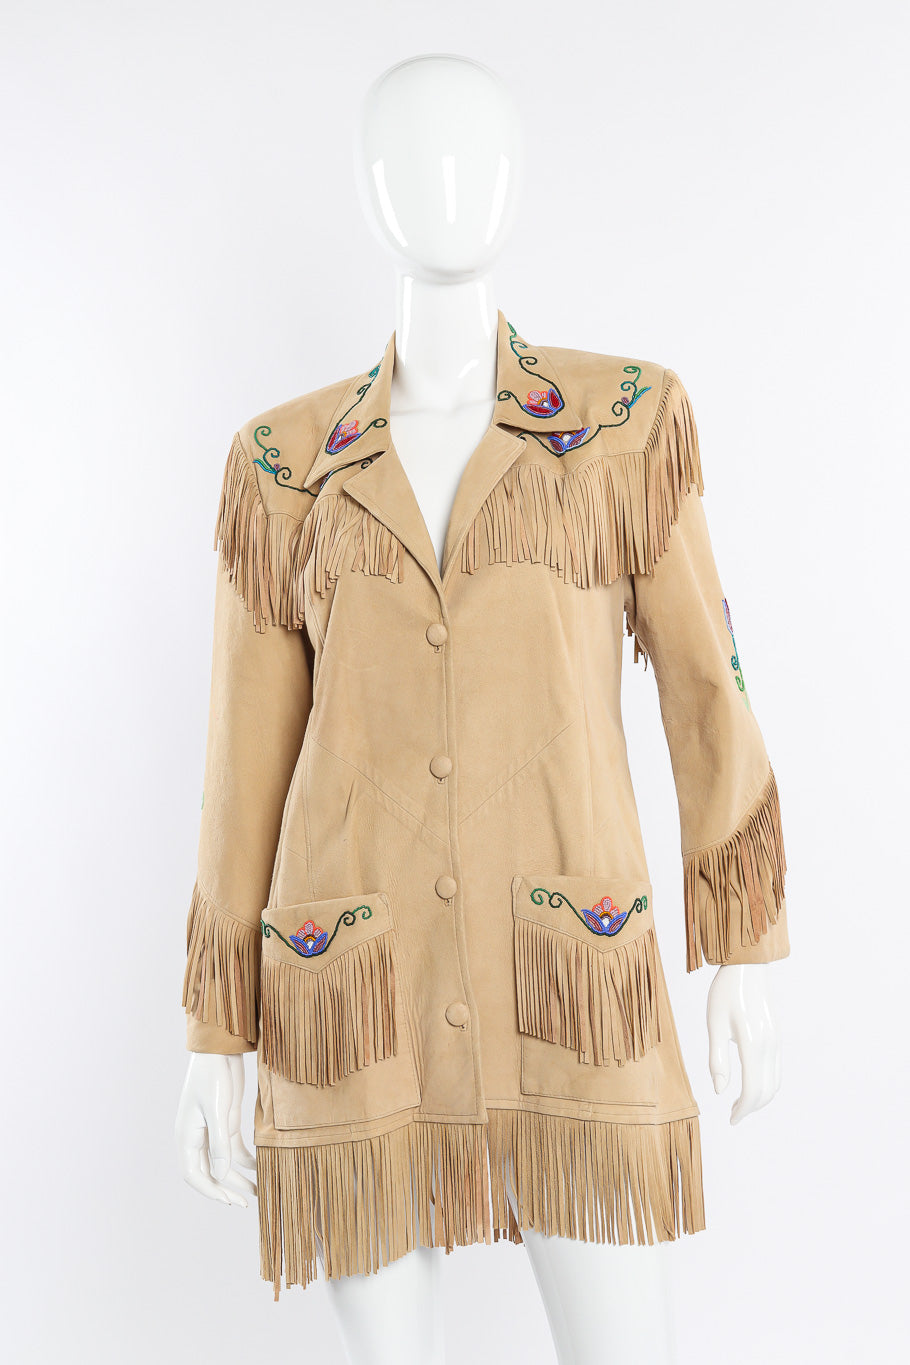 Vintage Char suede fringe jacket front view on mannequin @Recessla